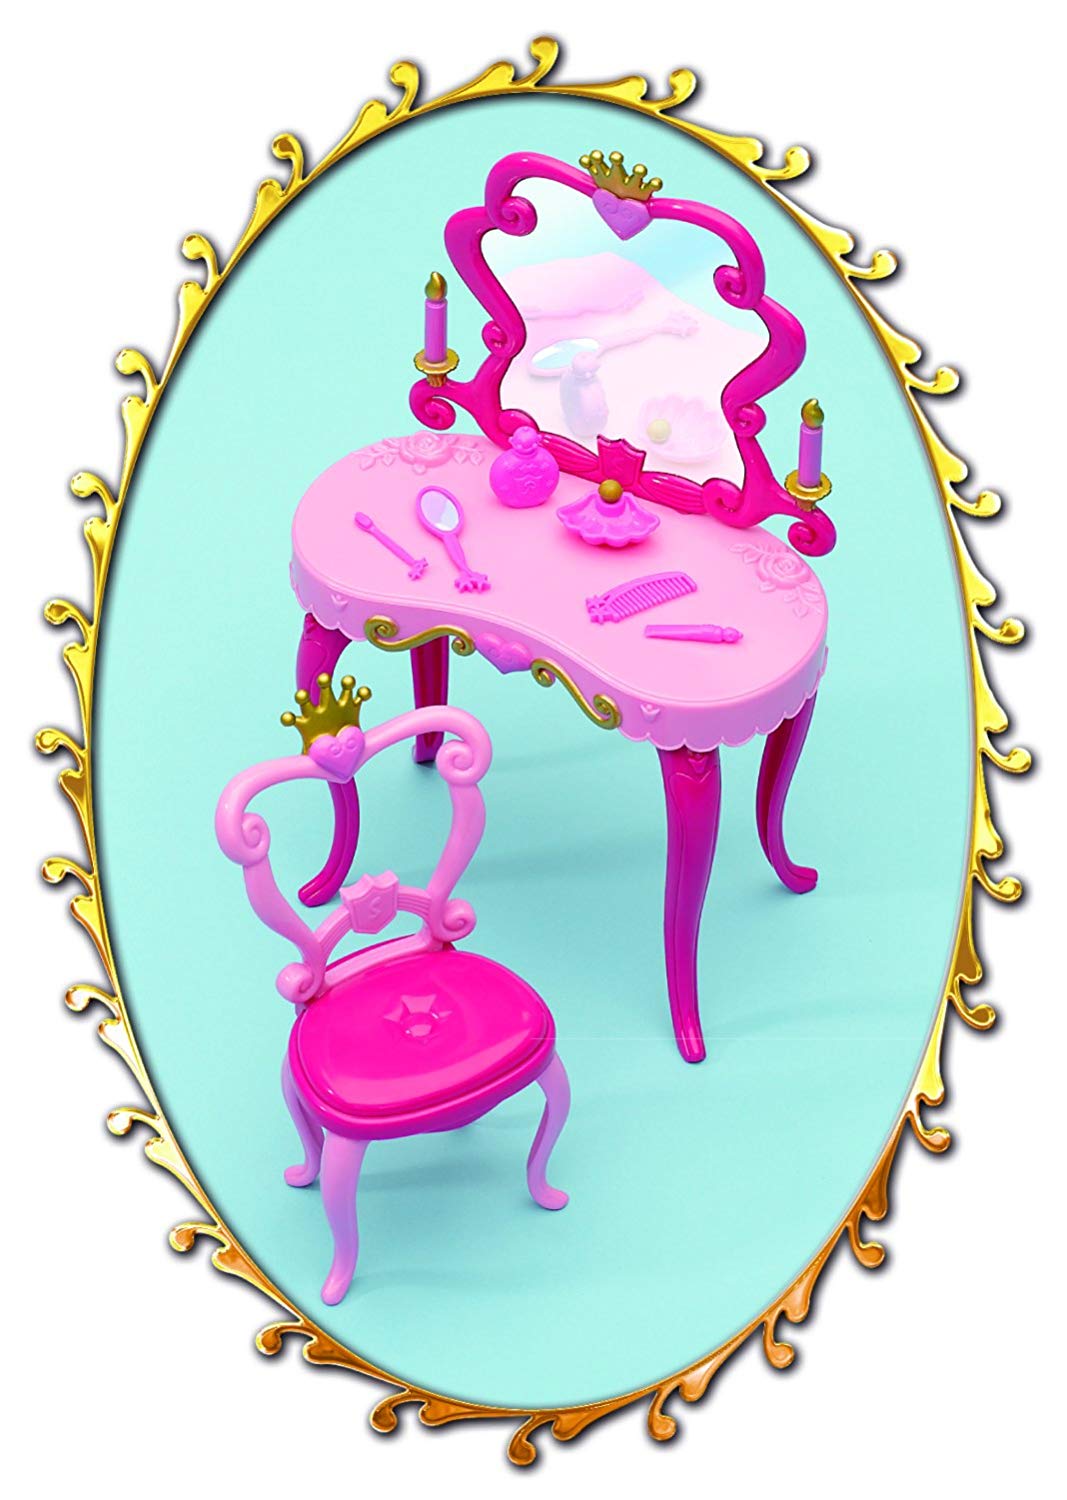 Кукла Штеффи-принцесса и столик  